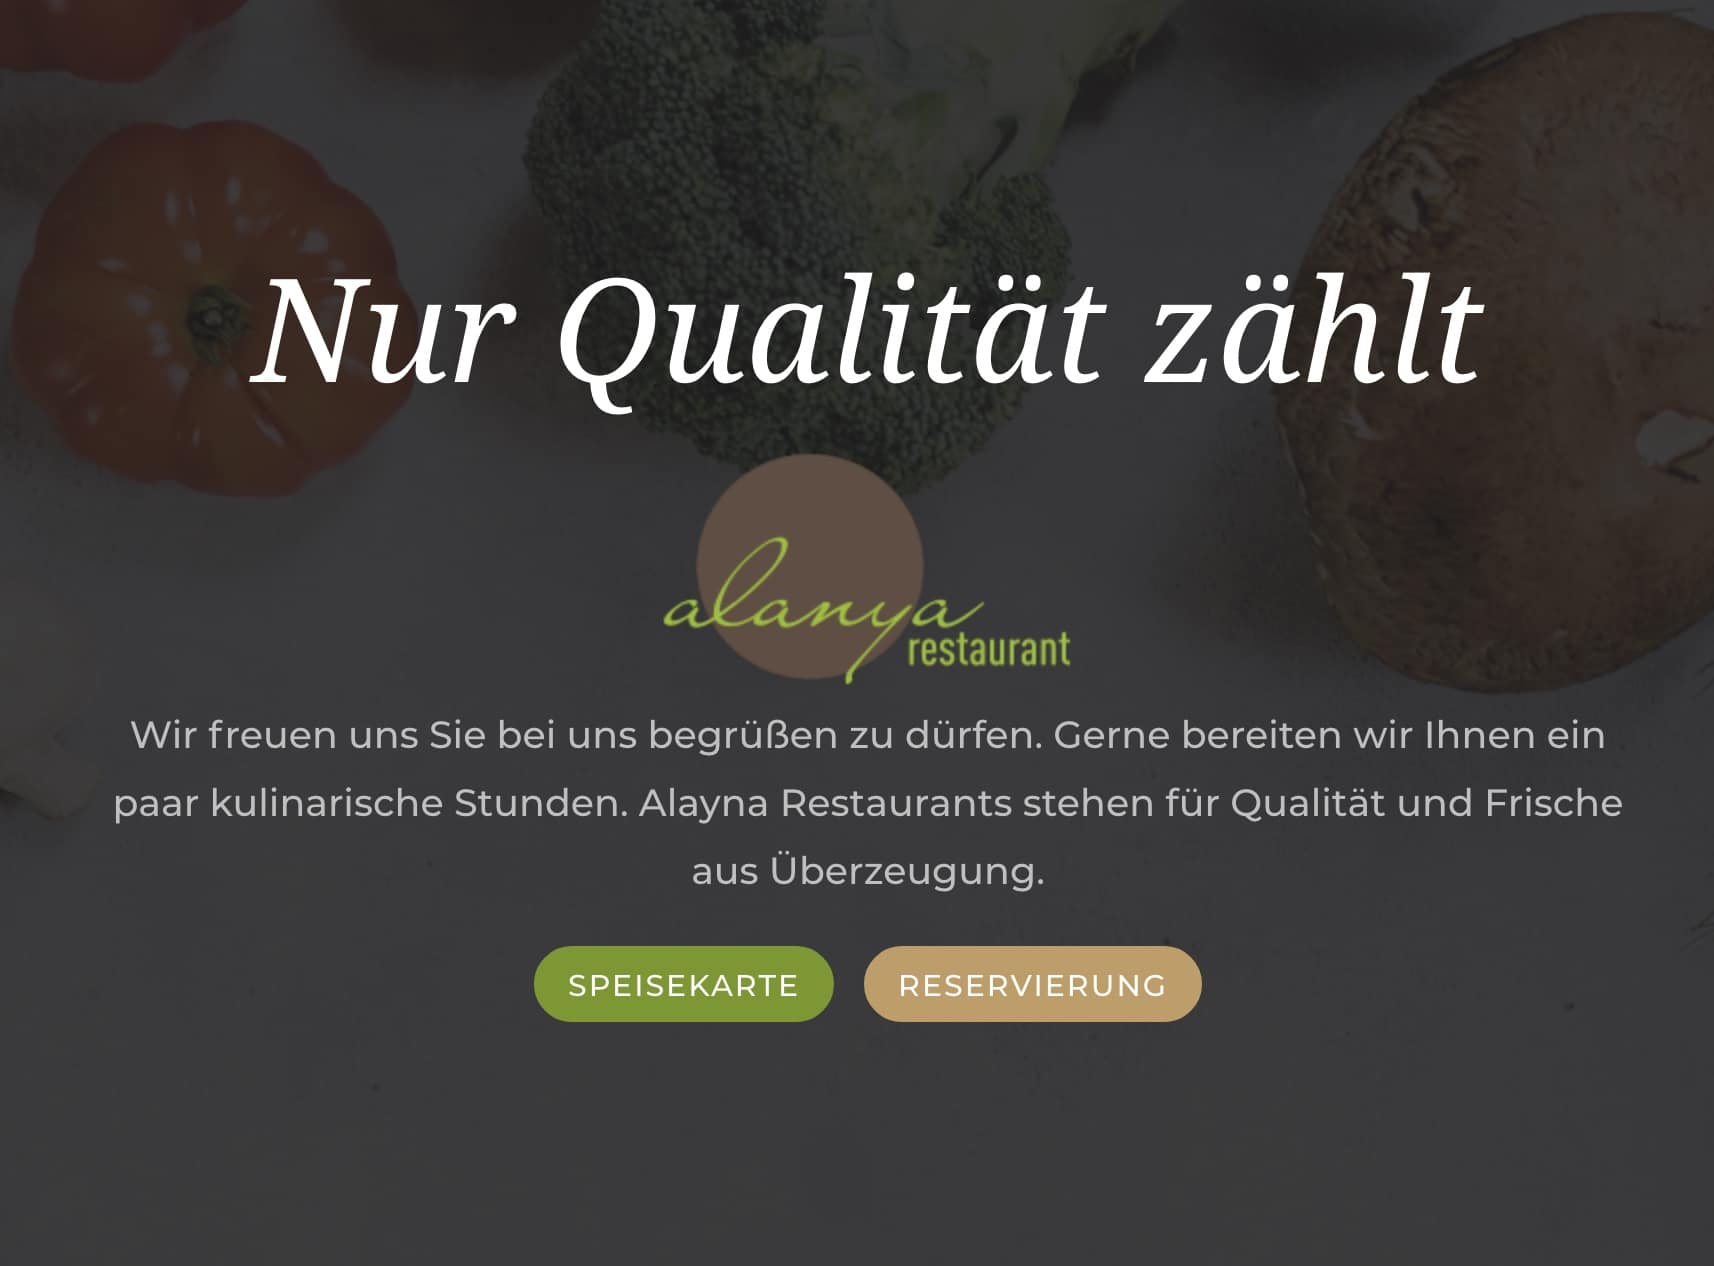 (c) Alanya-restaurant.de